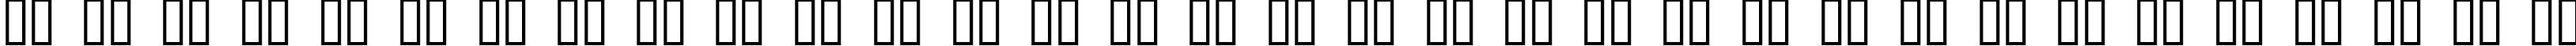 Пример написания русского алфавита шрифтом BN Dragon